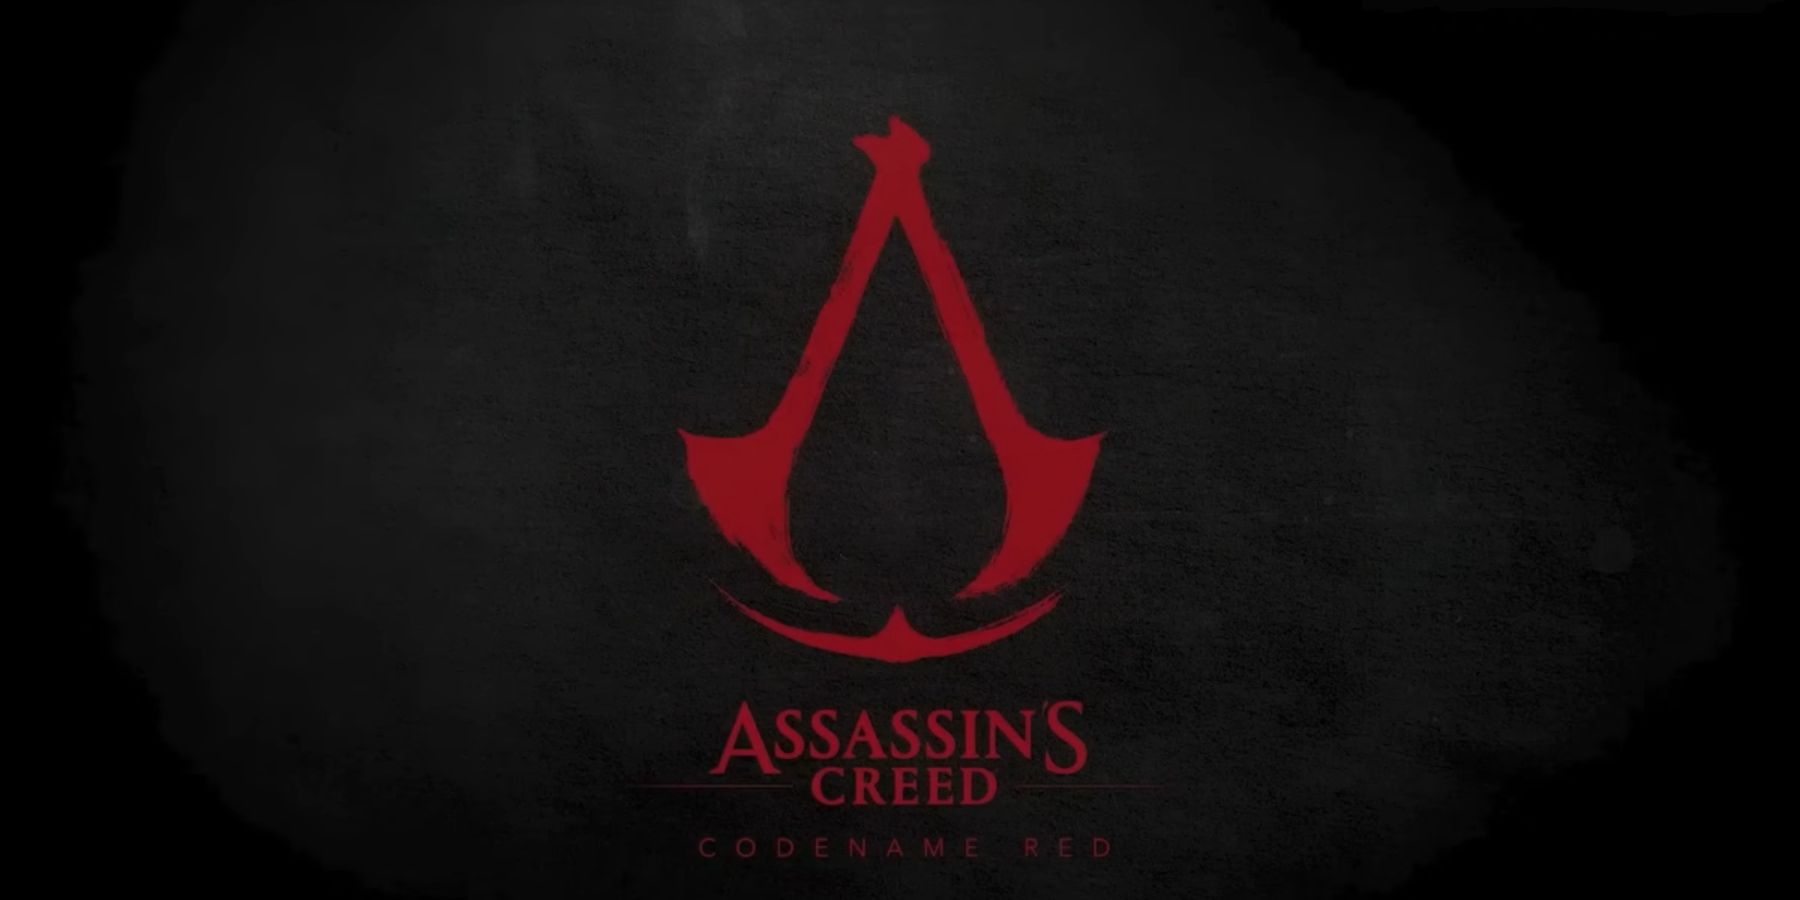 Ubisoft Employee hävdar att utvecklare har lämnat företaget på grund av Assassin’s Creed Red Director